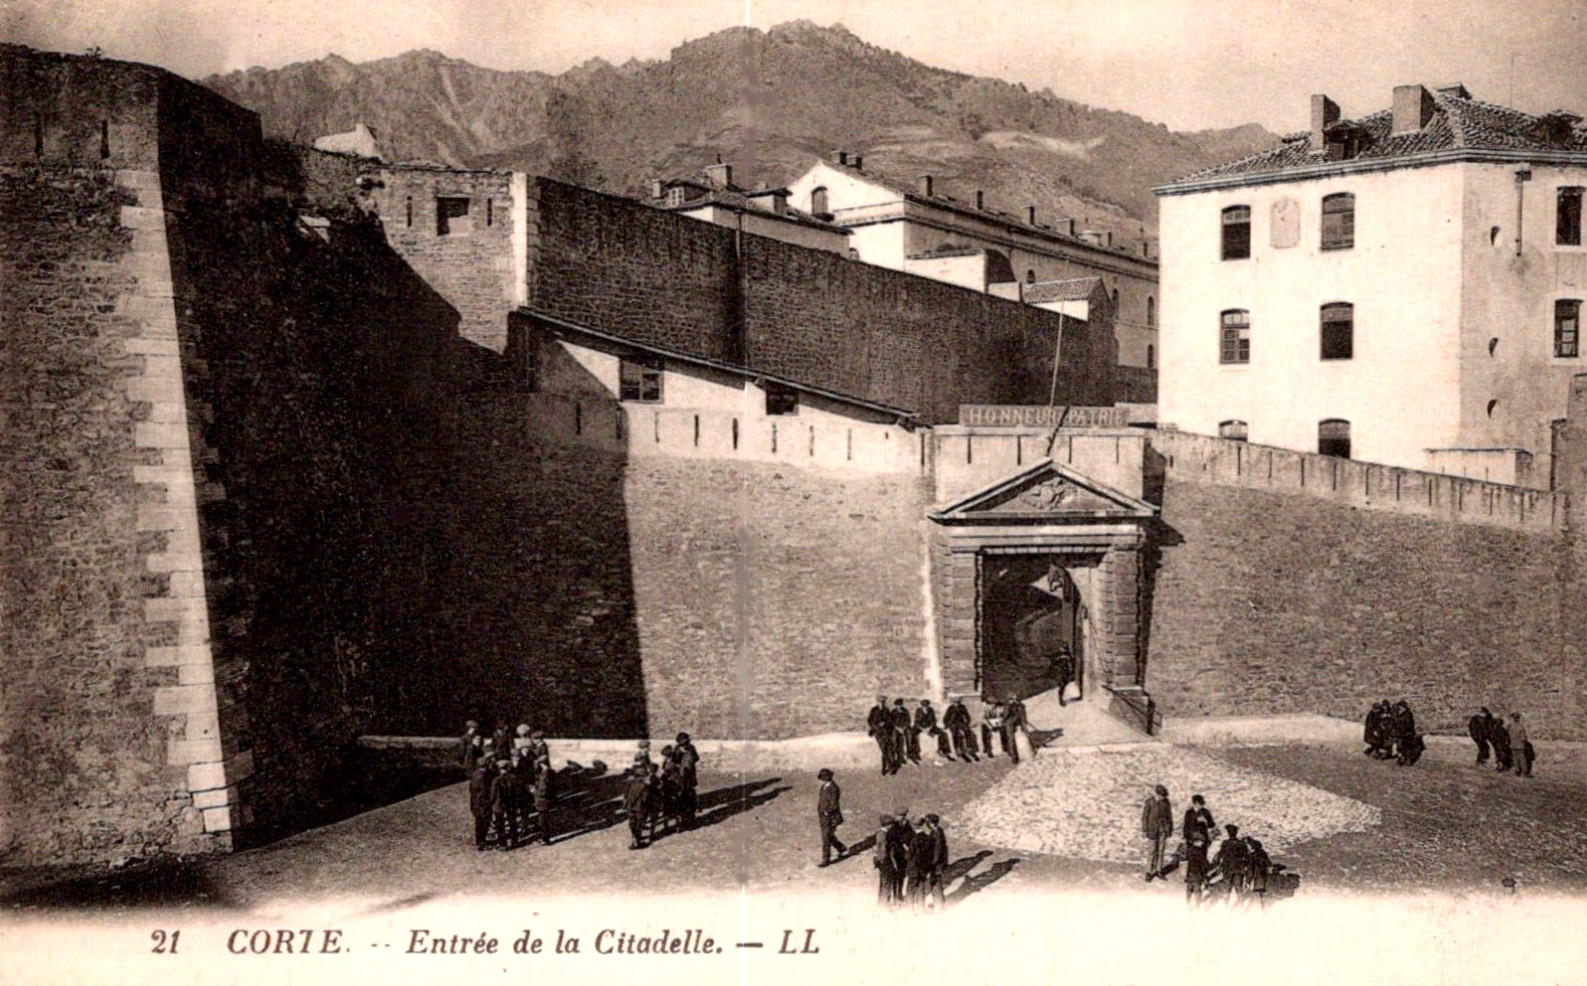 CORTE - Citadelle - II - .jpg